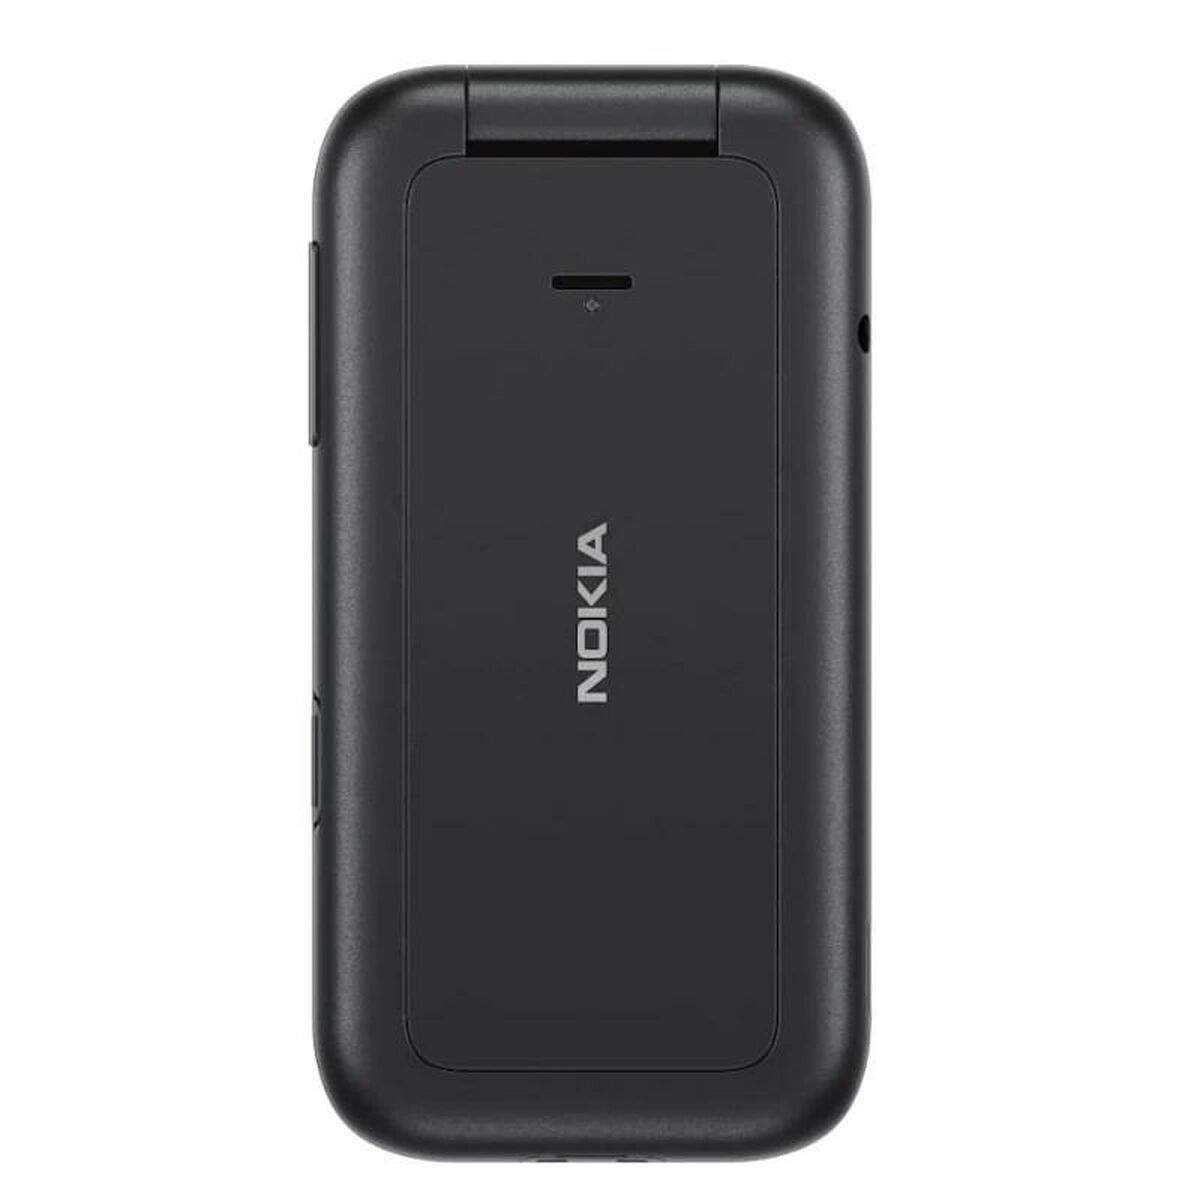 Teléfono Móvil para Mayores Nokia 2660 2,8" Negro 32 GB